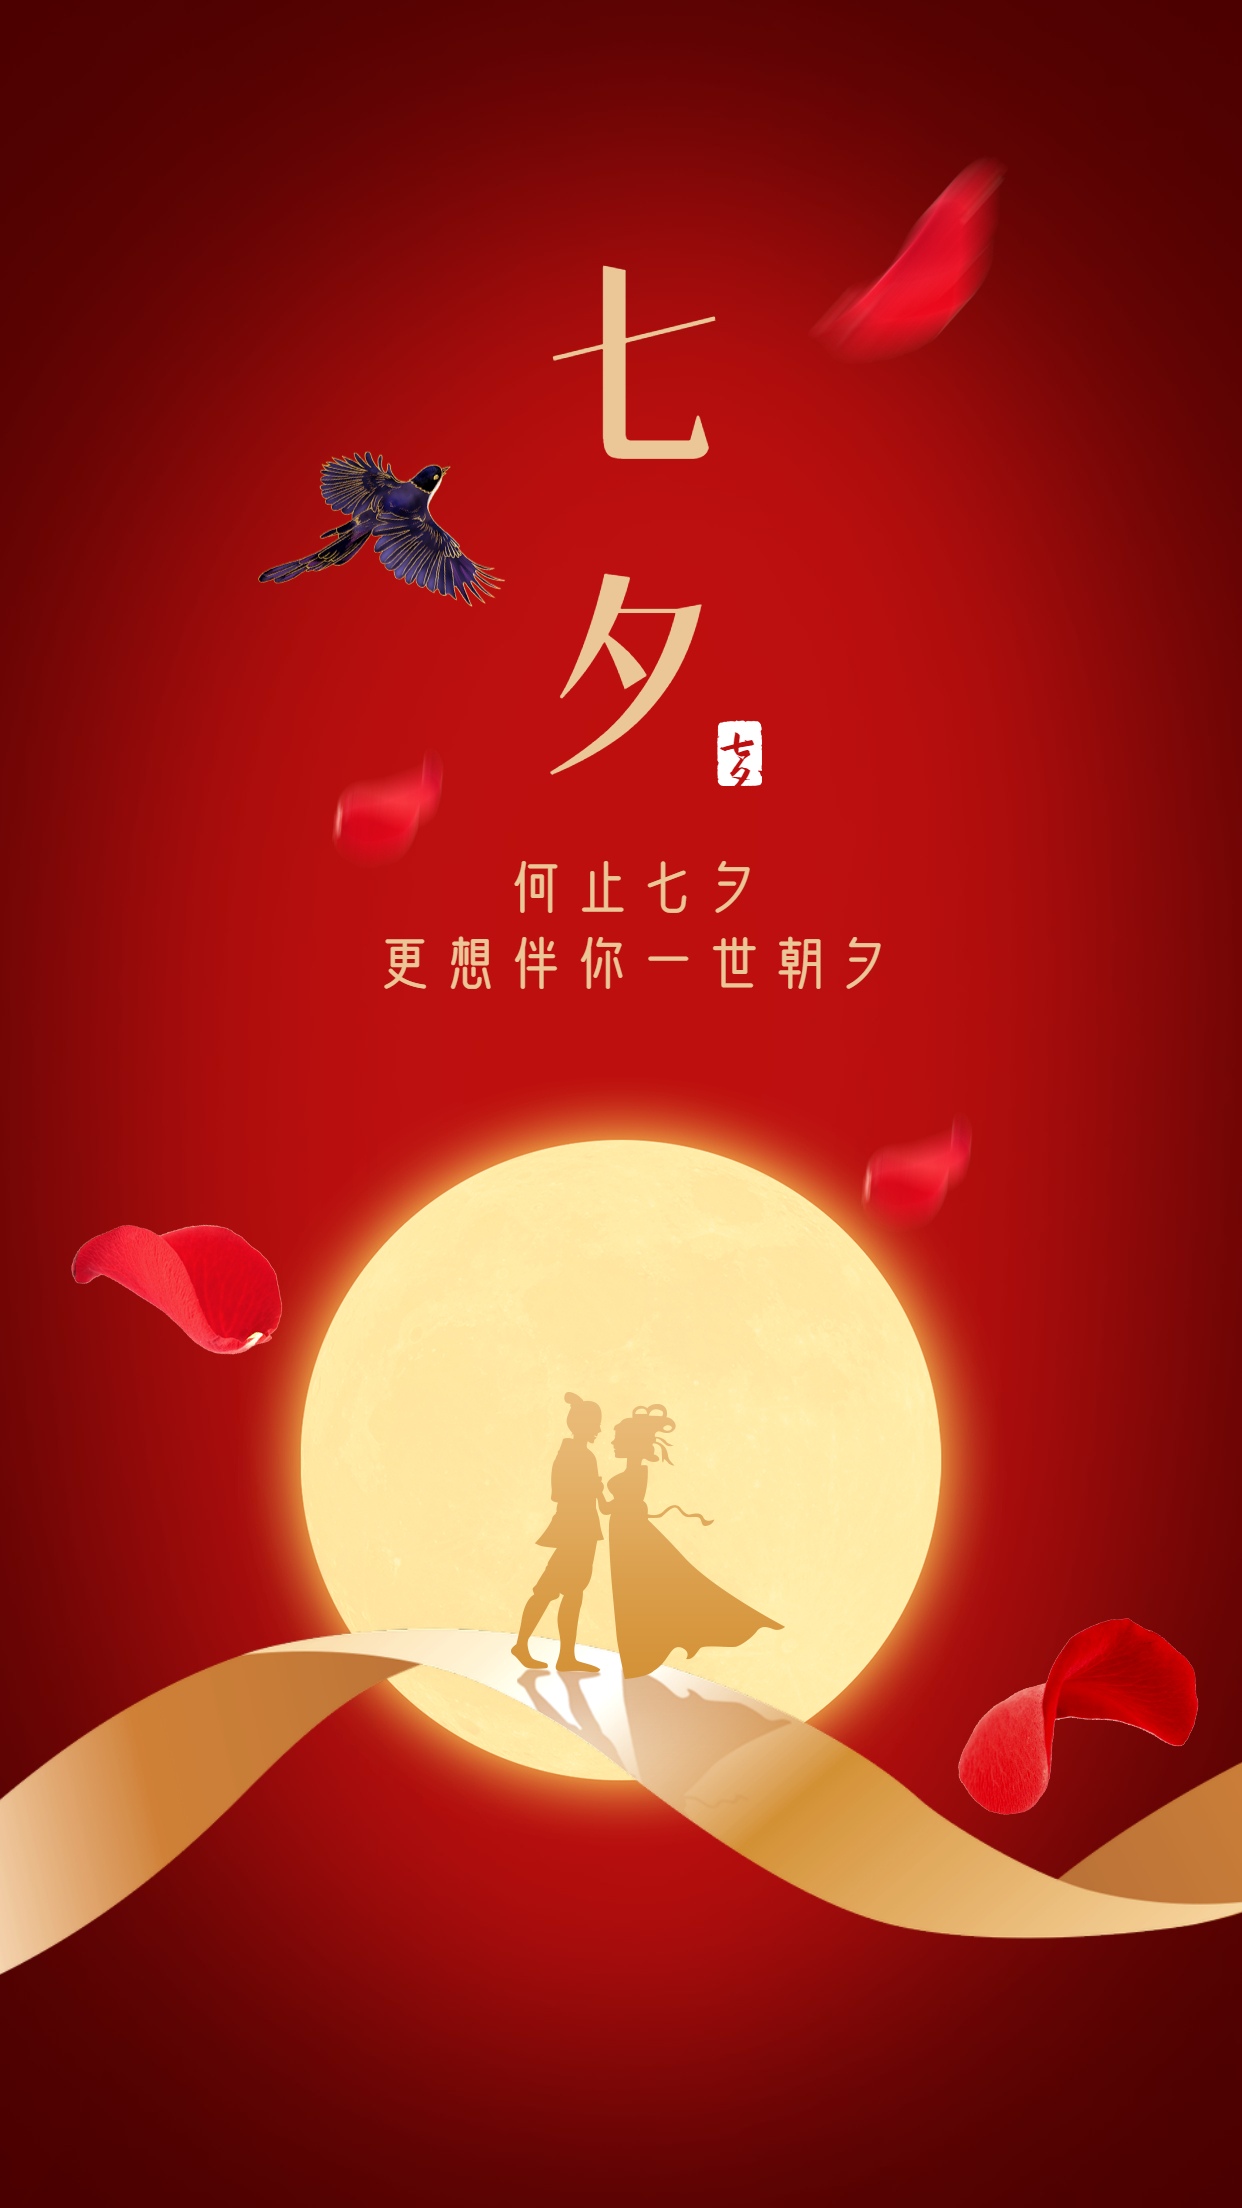 创意玫瑰七夕节节日宣传动态海报gif动图下载-包图网